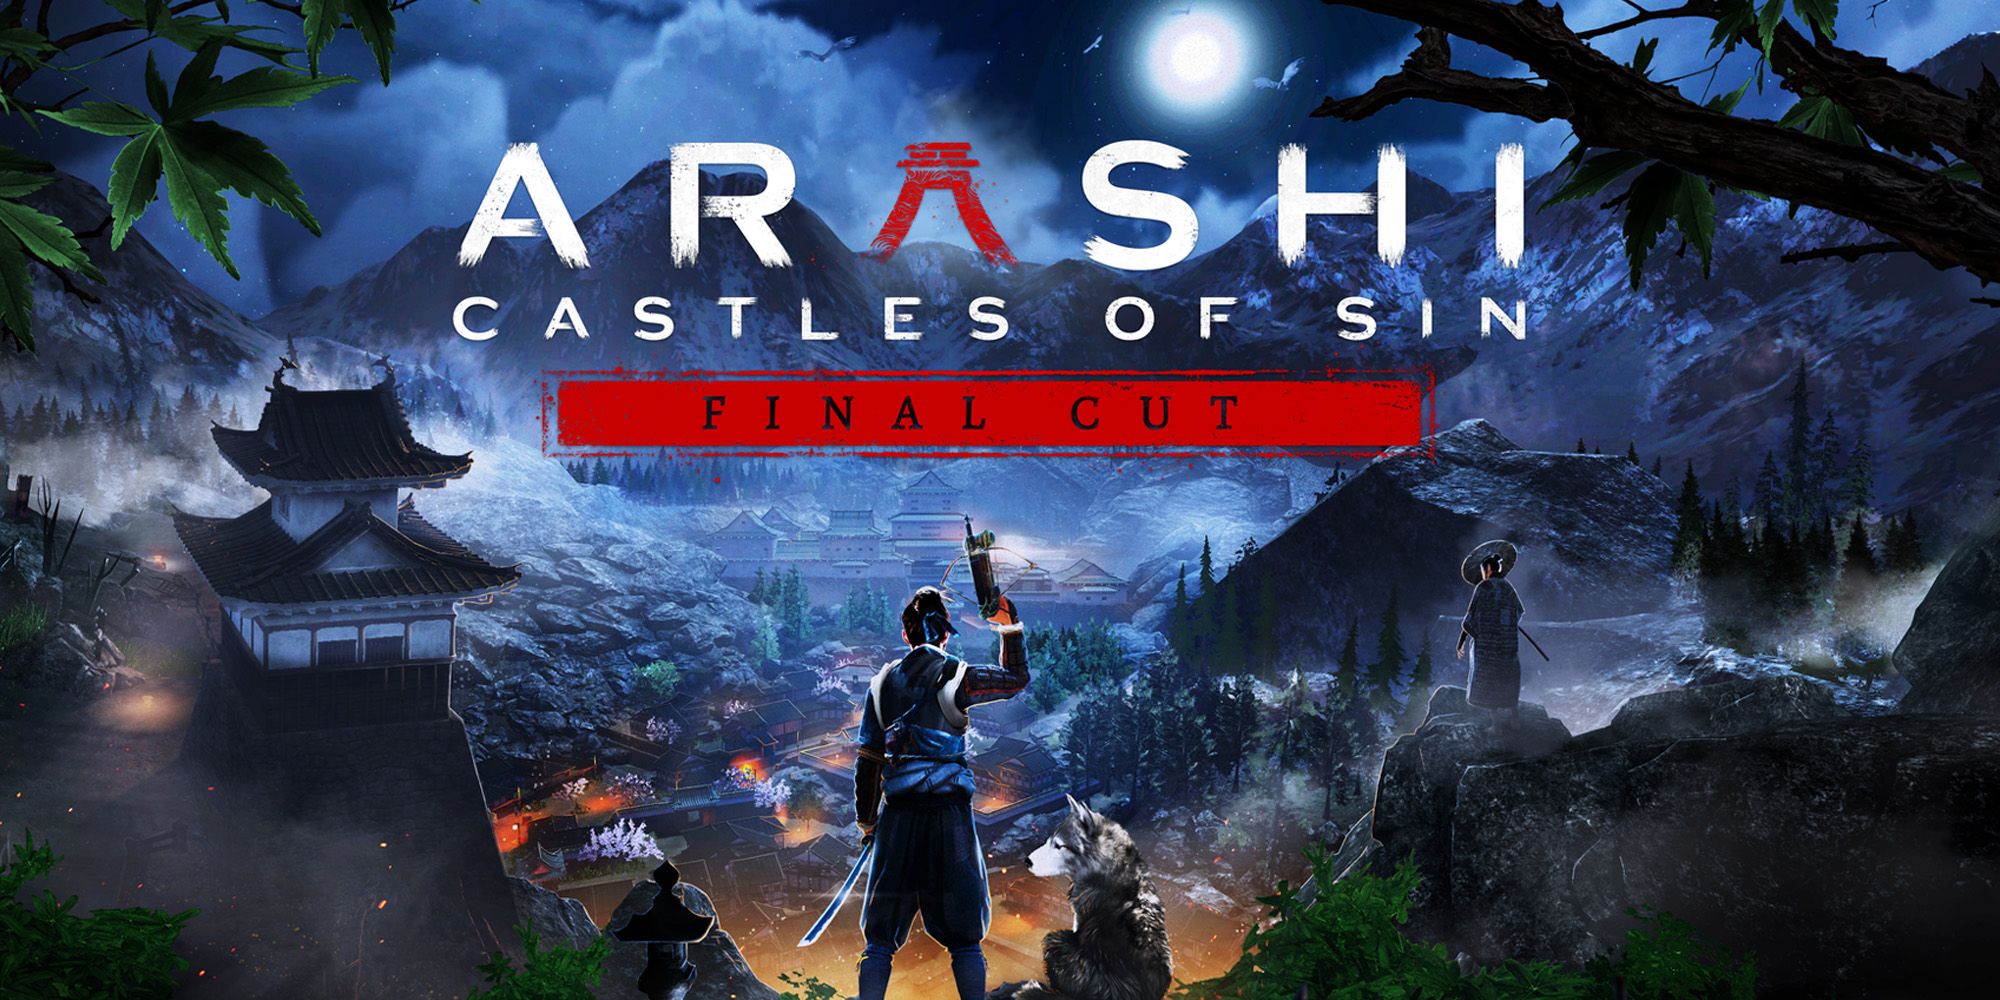 “Un primer borrador, no un montaje final” – Arashi: Castles of Sin – Revisión del montaje final